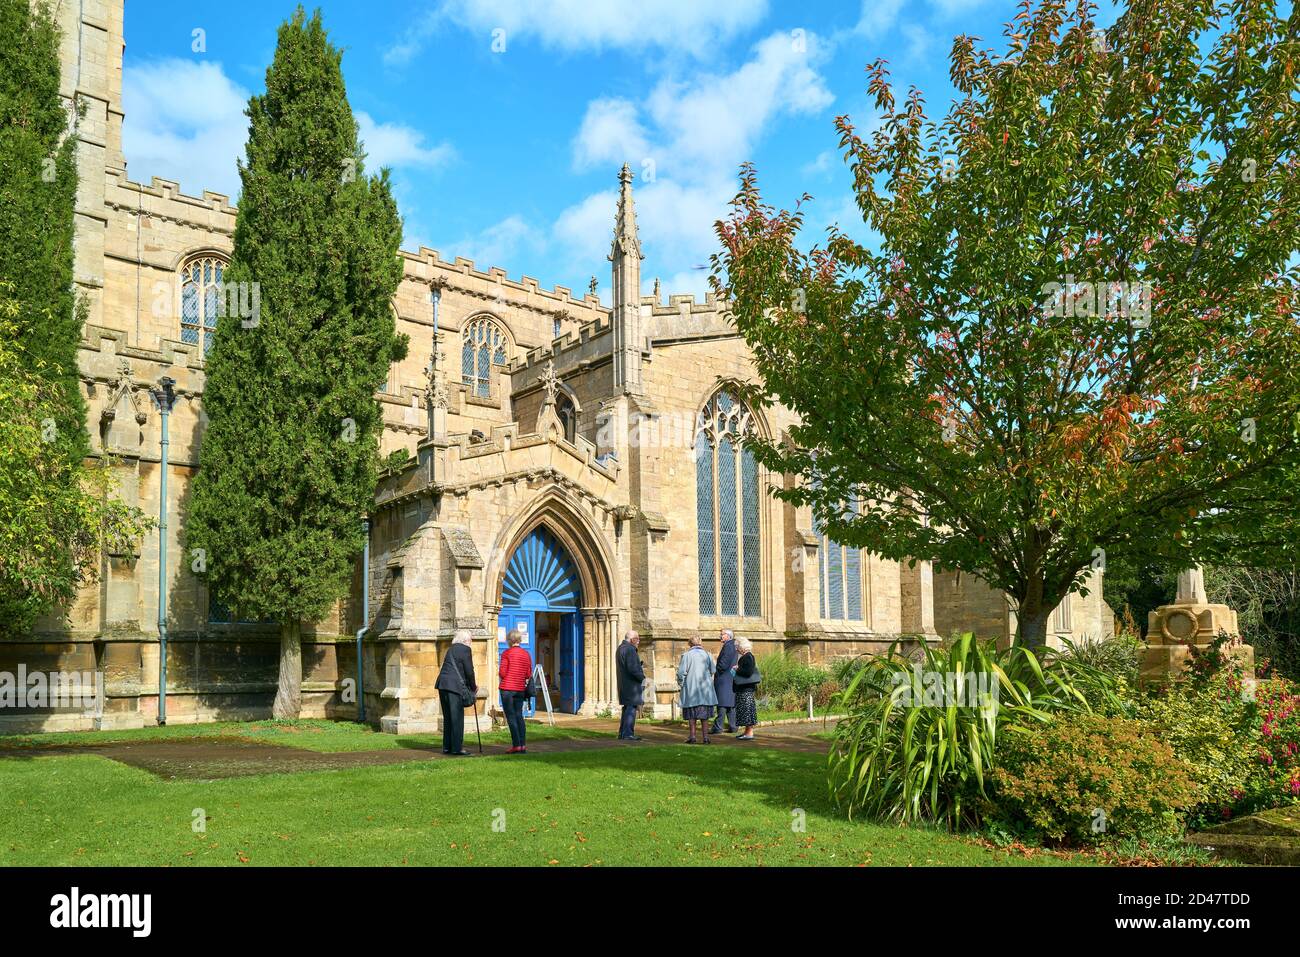 Trauernde warten vor der Allerheiligen-Pfarrkirche in Oakham, Rutland, England, auf einen Trauergottesdienst während der Coronavirus-Epidemie, Oktober 2020. Stockfoto